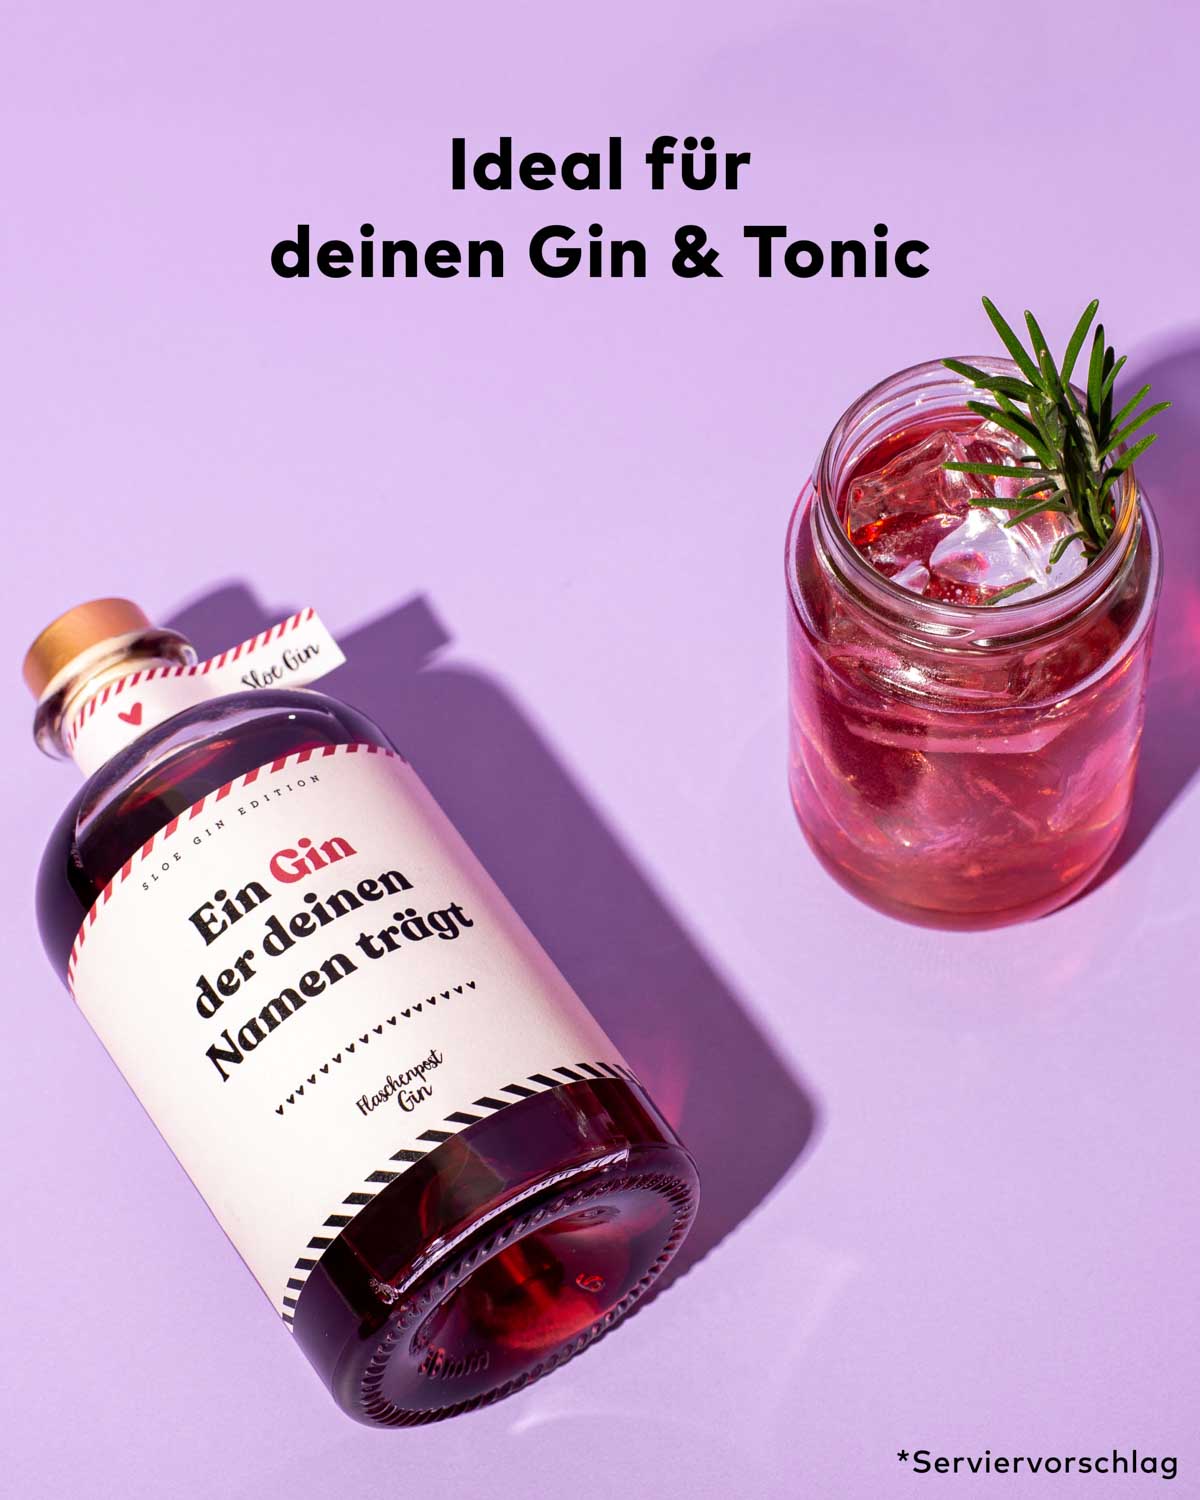 Der Gin mit individuellem Namen auf dem Etikett - unser roter Sloe Gin aus Schlehenbeeren. Perfekt für einen besonderen Gin und Tonic. 